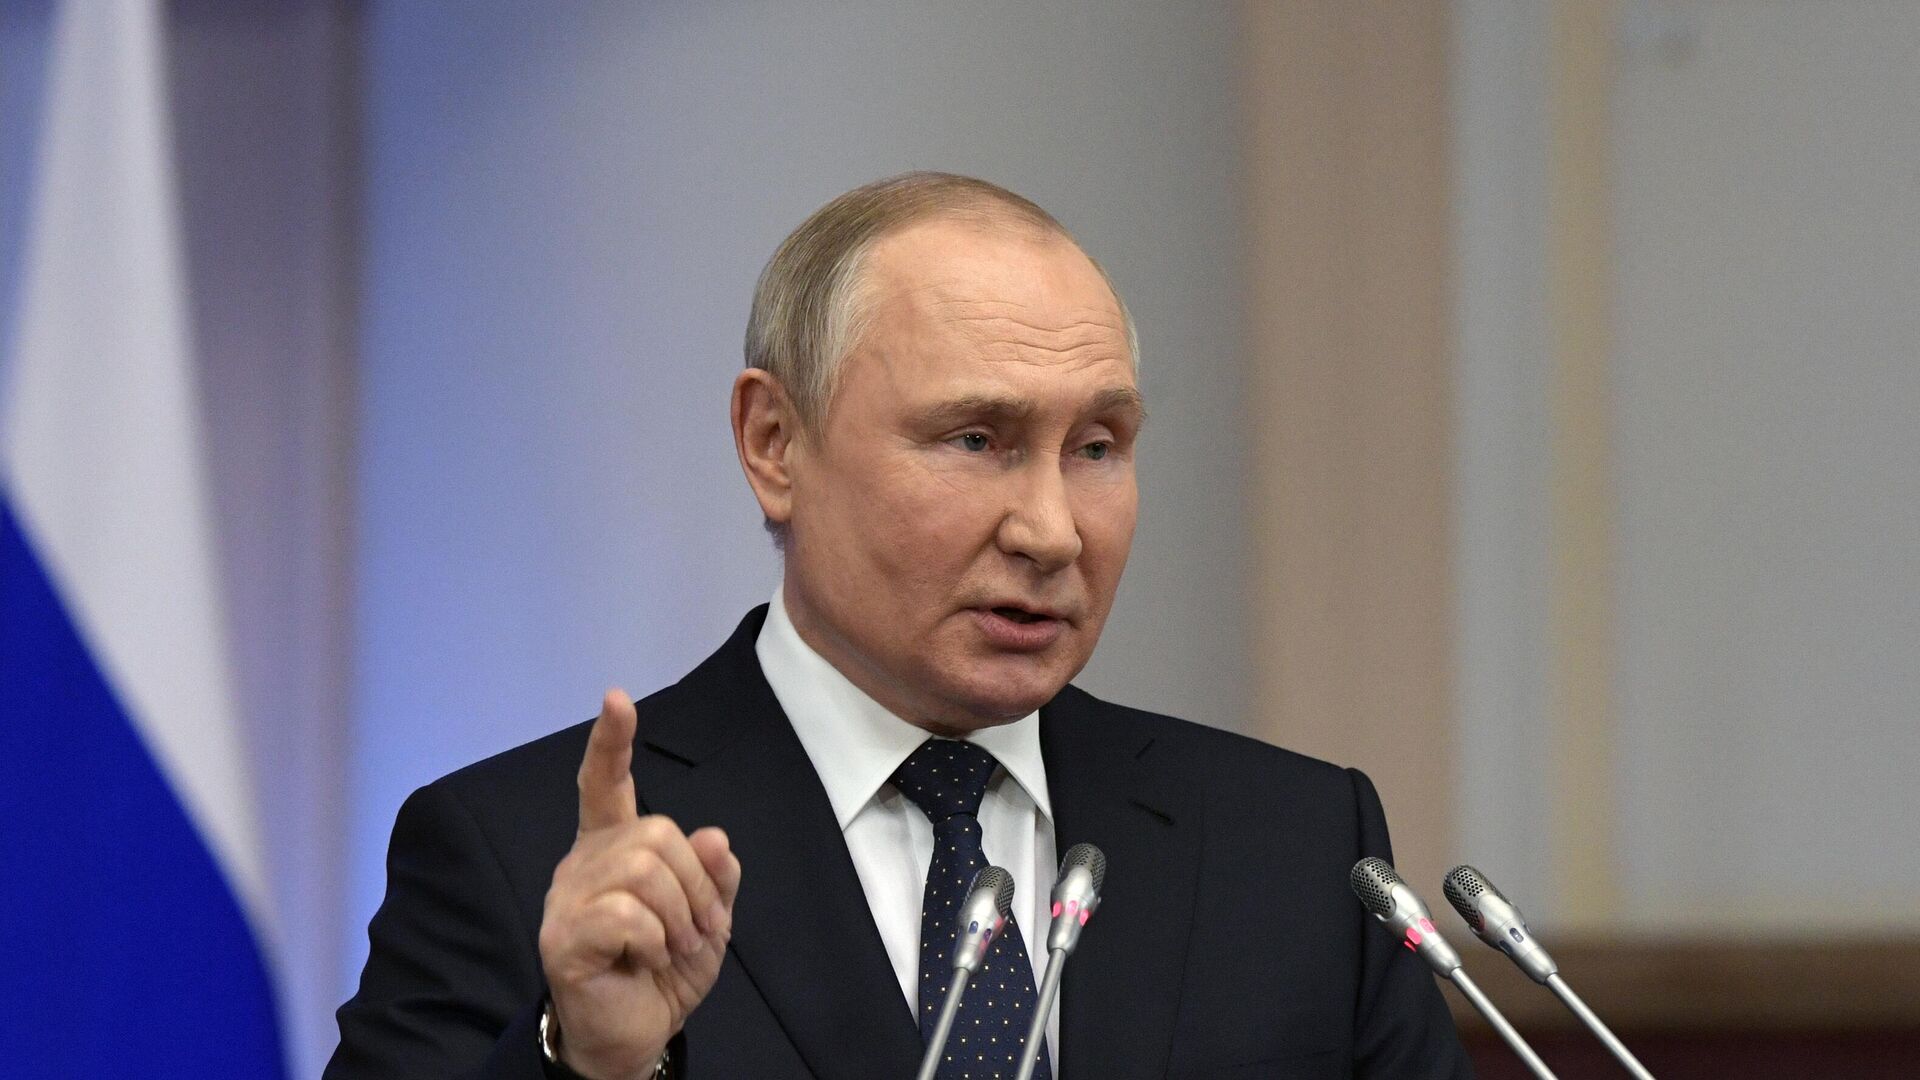 تأجيل كلمة بوتين في منتدى بطرسبورغ الاقتصادي بسبب هجمات سيبرانية